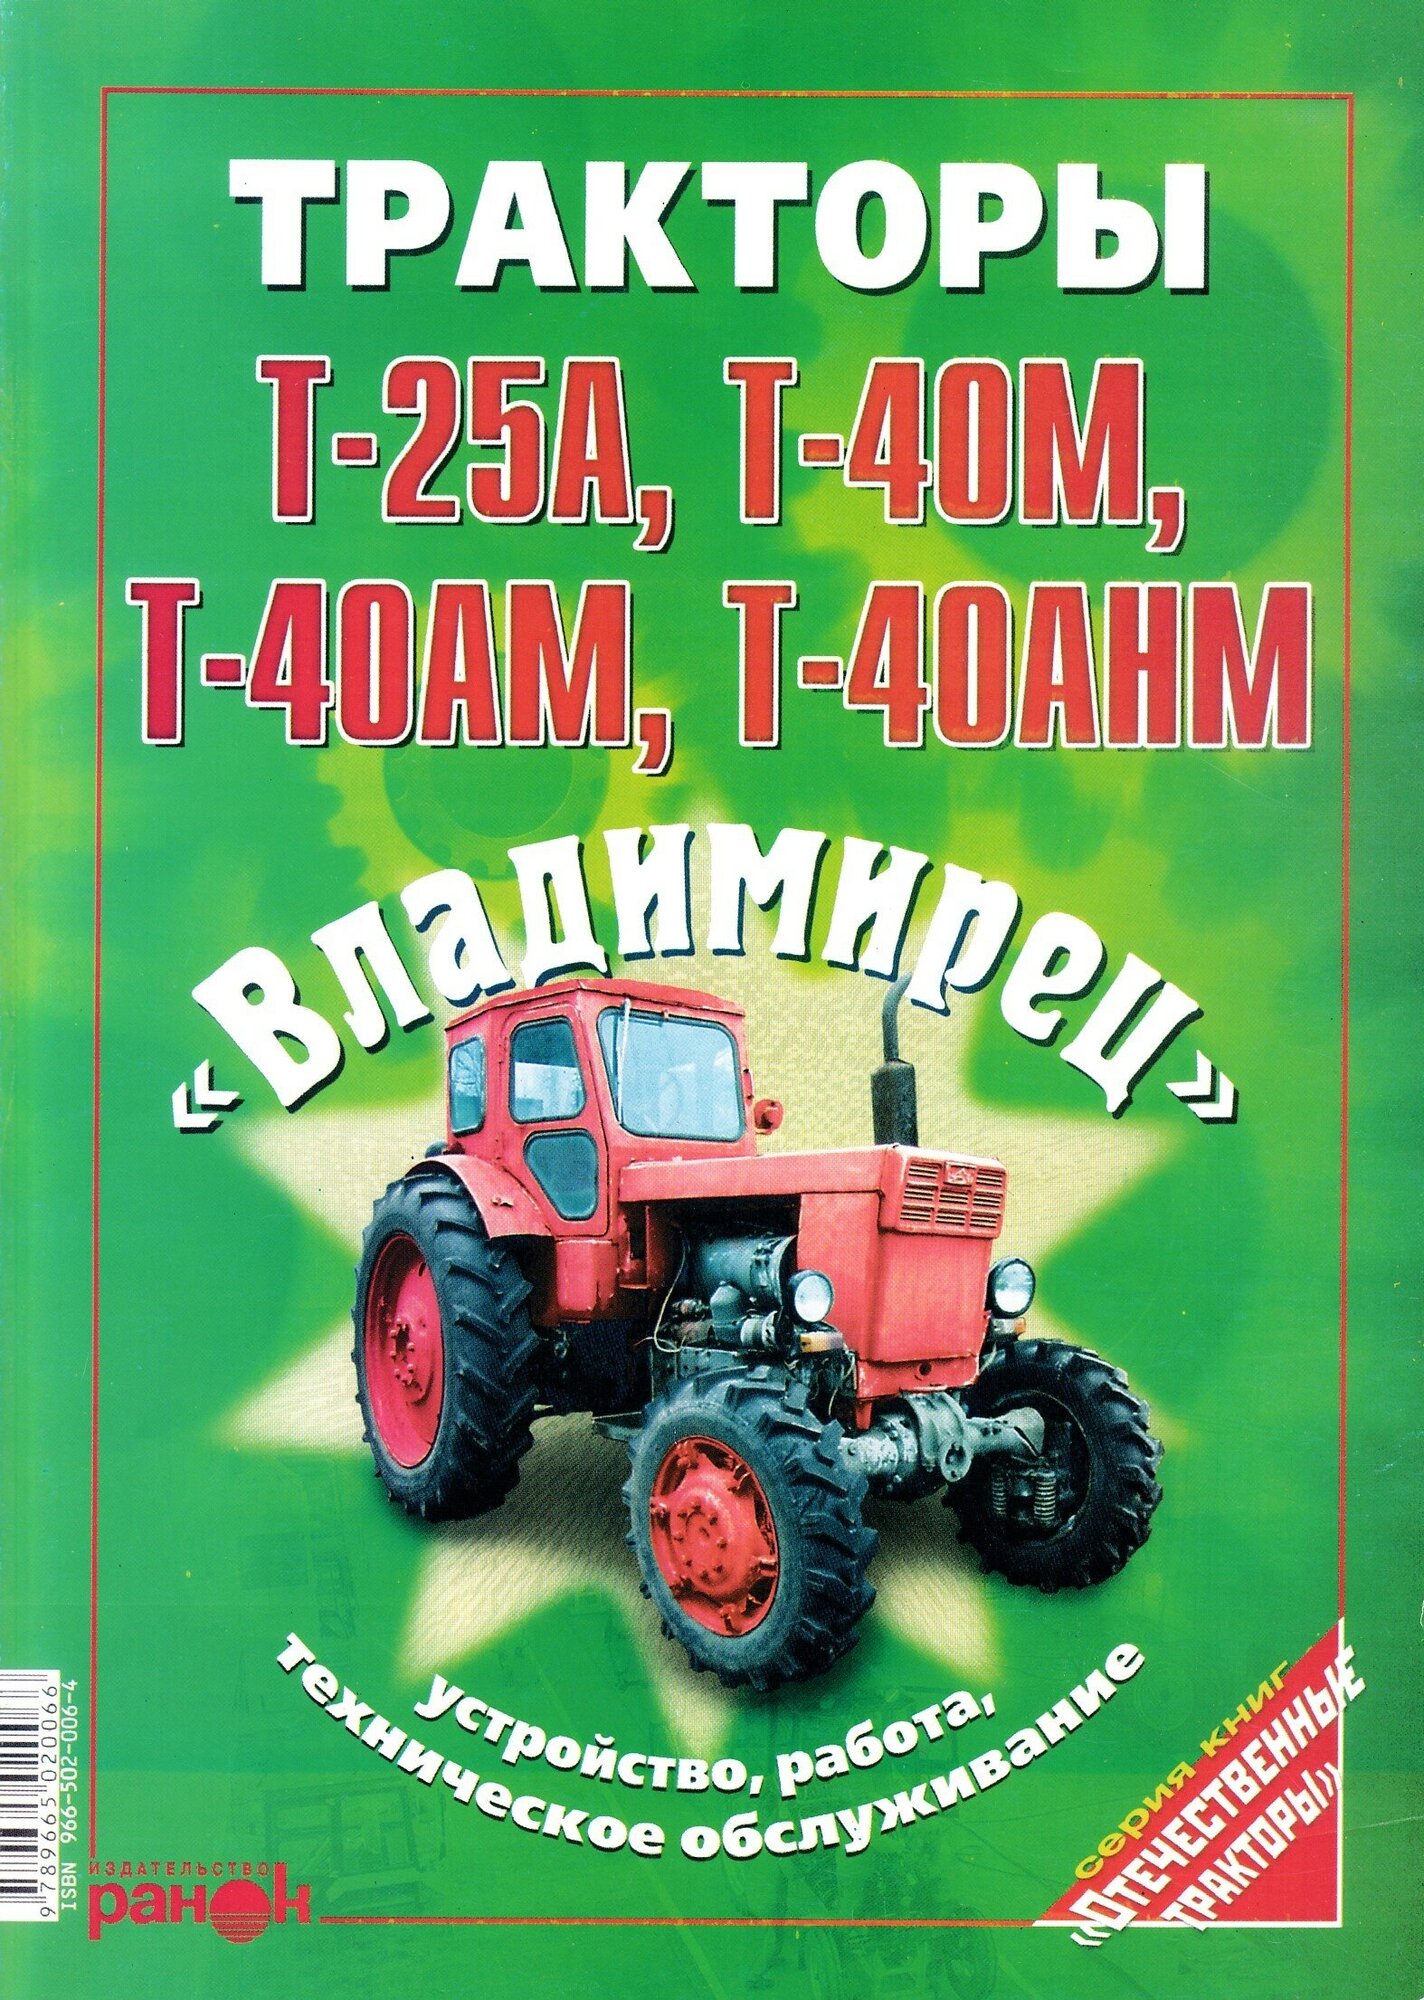 Тракторы Т-25А, Т-40М, Т-40АМ, Т-40АНМ "Владимирец". Устройство, работа, техническое обслуживание"